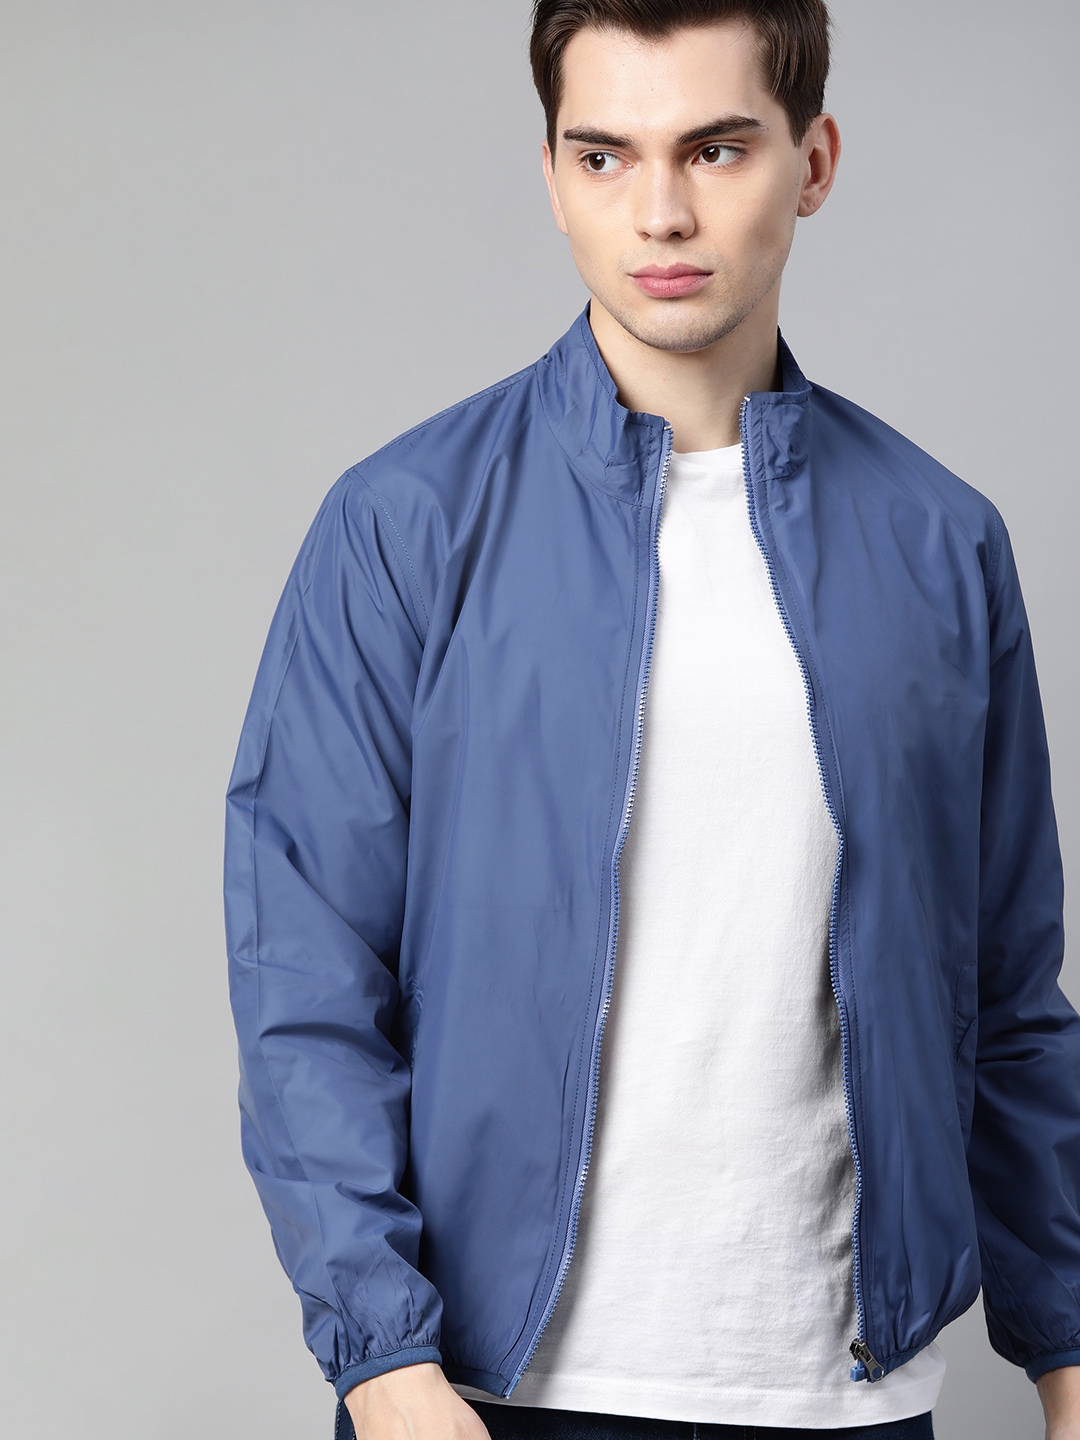 Buy Harvard Men Blue Tailored Jacket - Jackets for Men 14280222 | Myntra